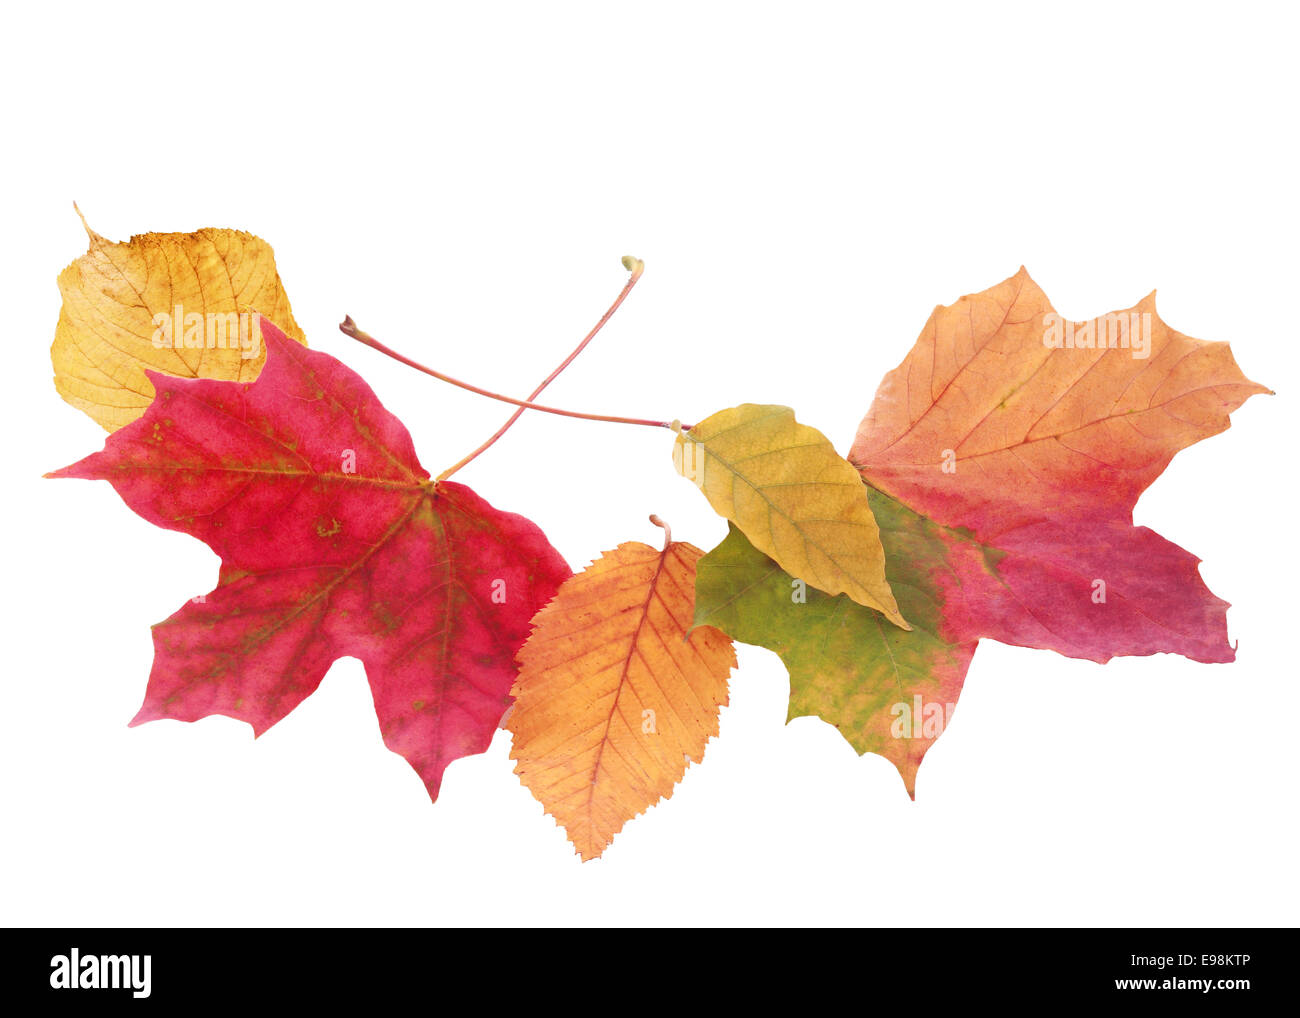 La disposizione a ventaglio delle belle autmn colorati o cadono le foglie in una varietà di forme e di colori isolato su bianco con copyspace Foto Stock